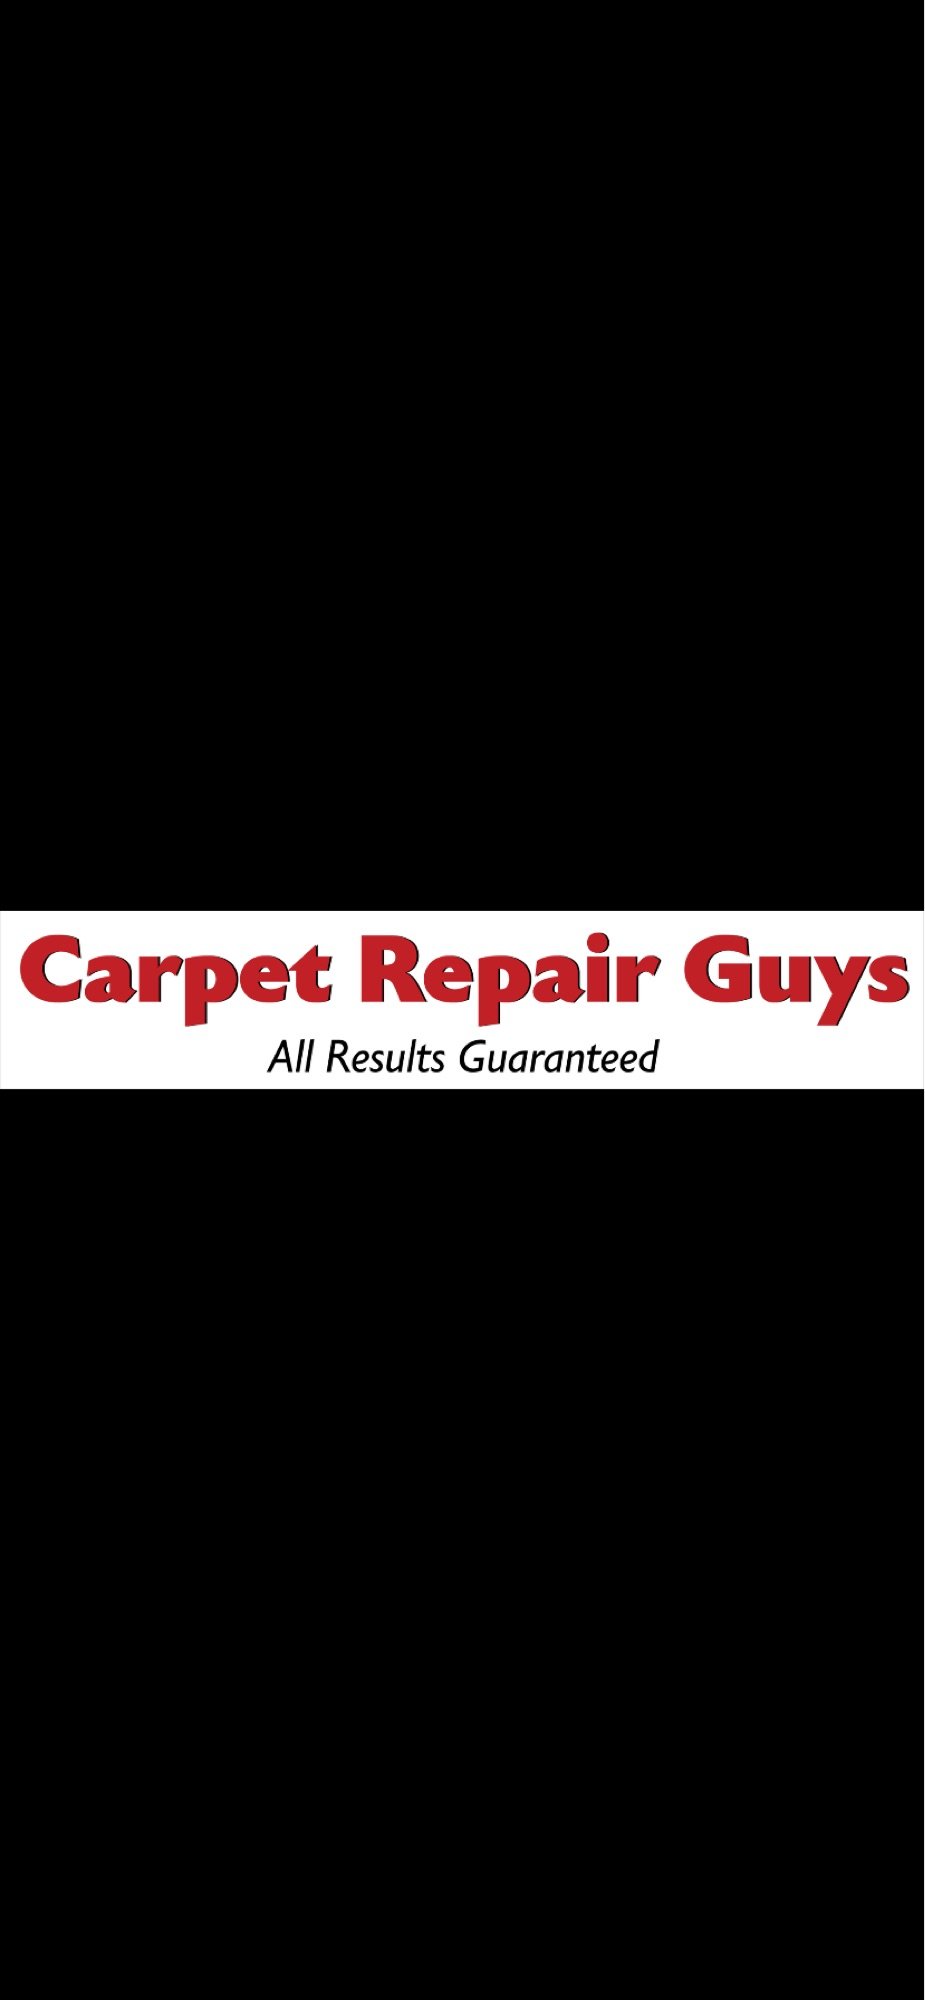 The Carpet Repair Guys Logo